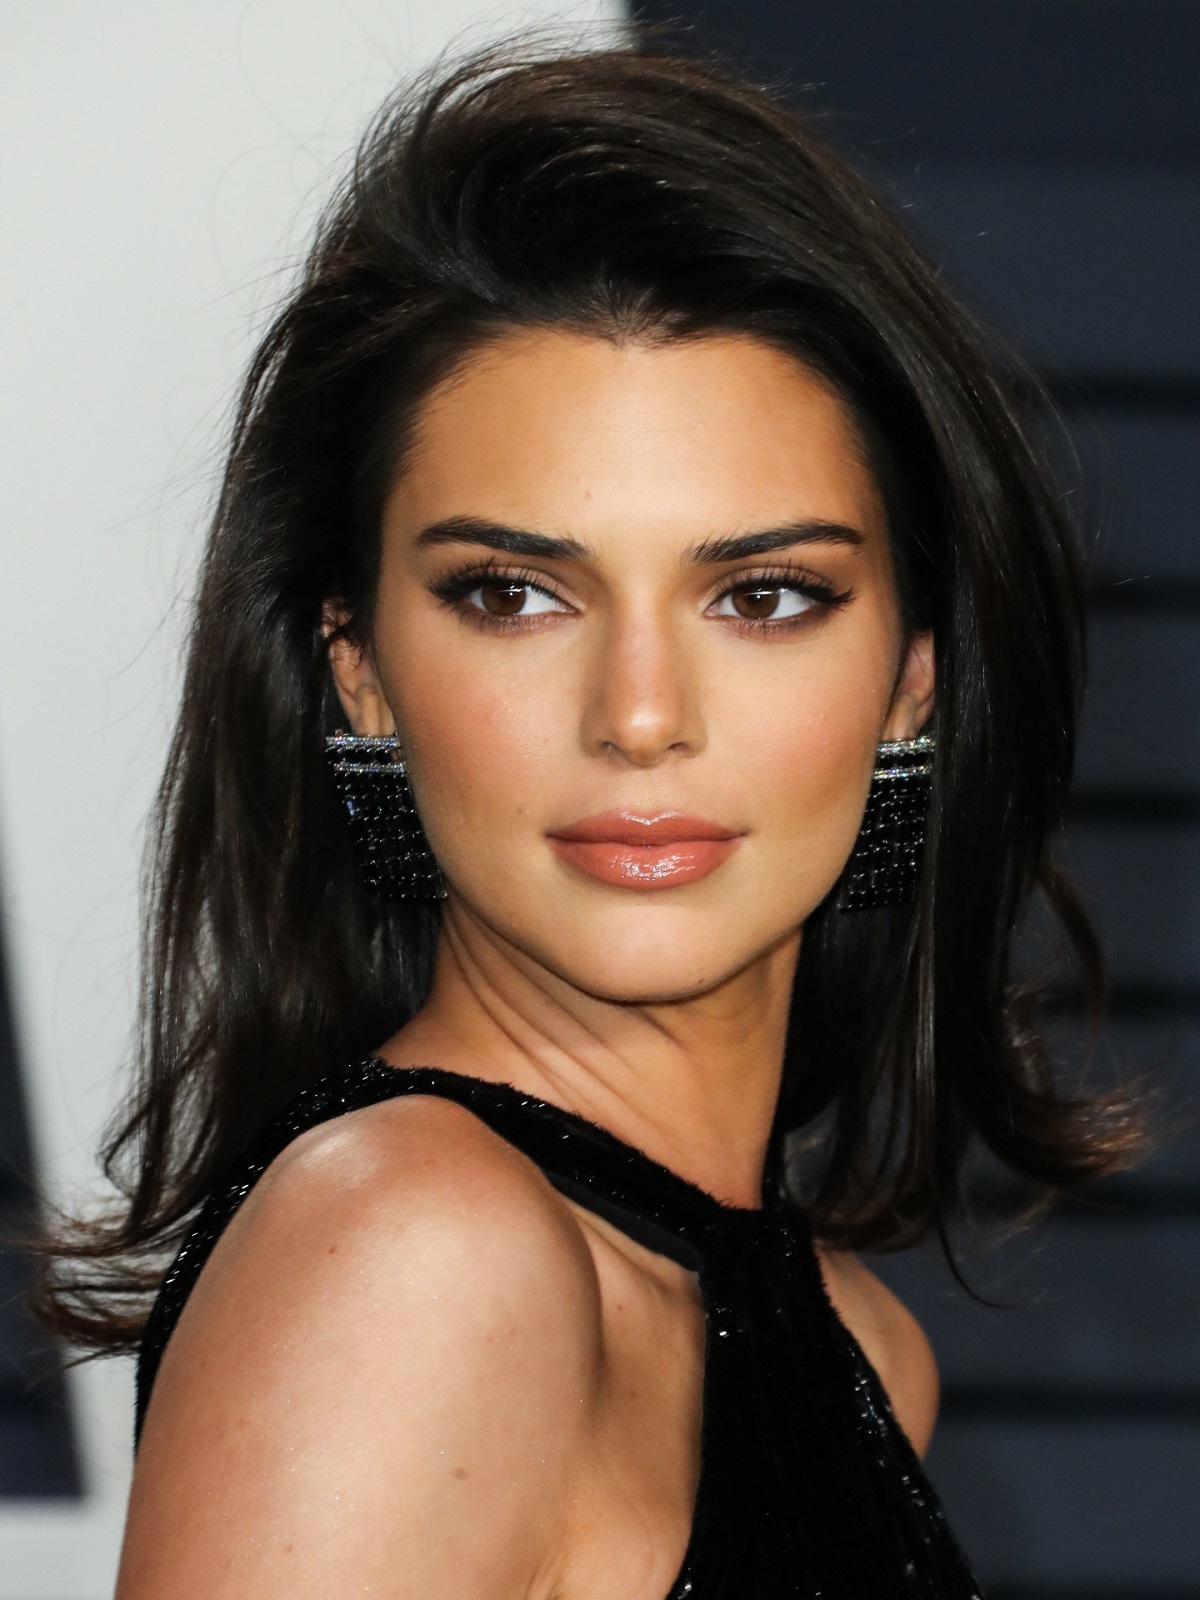 Los coloretes de tonos rojizos y tostados son más adecuados para las pieles morenas como la de Kendall Jenner.